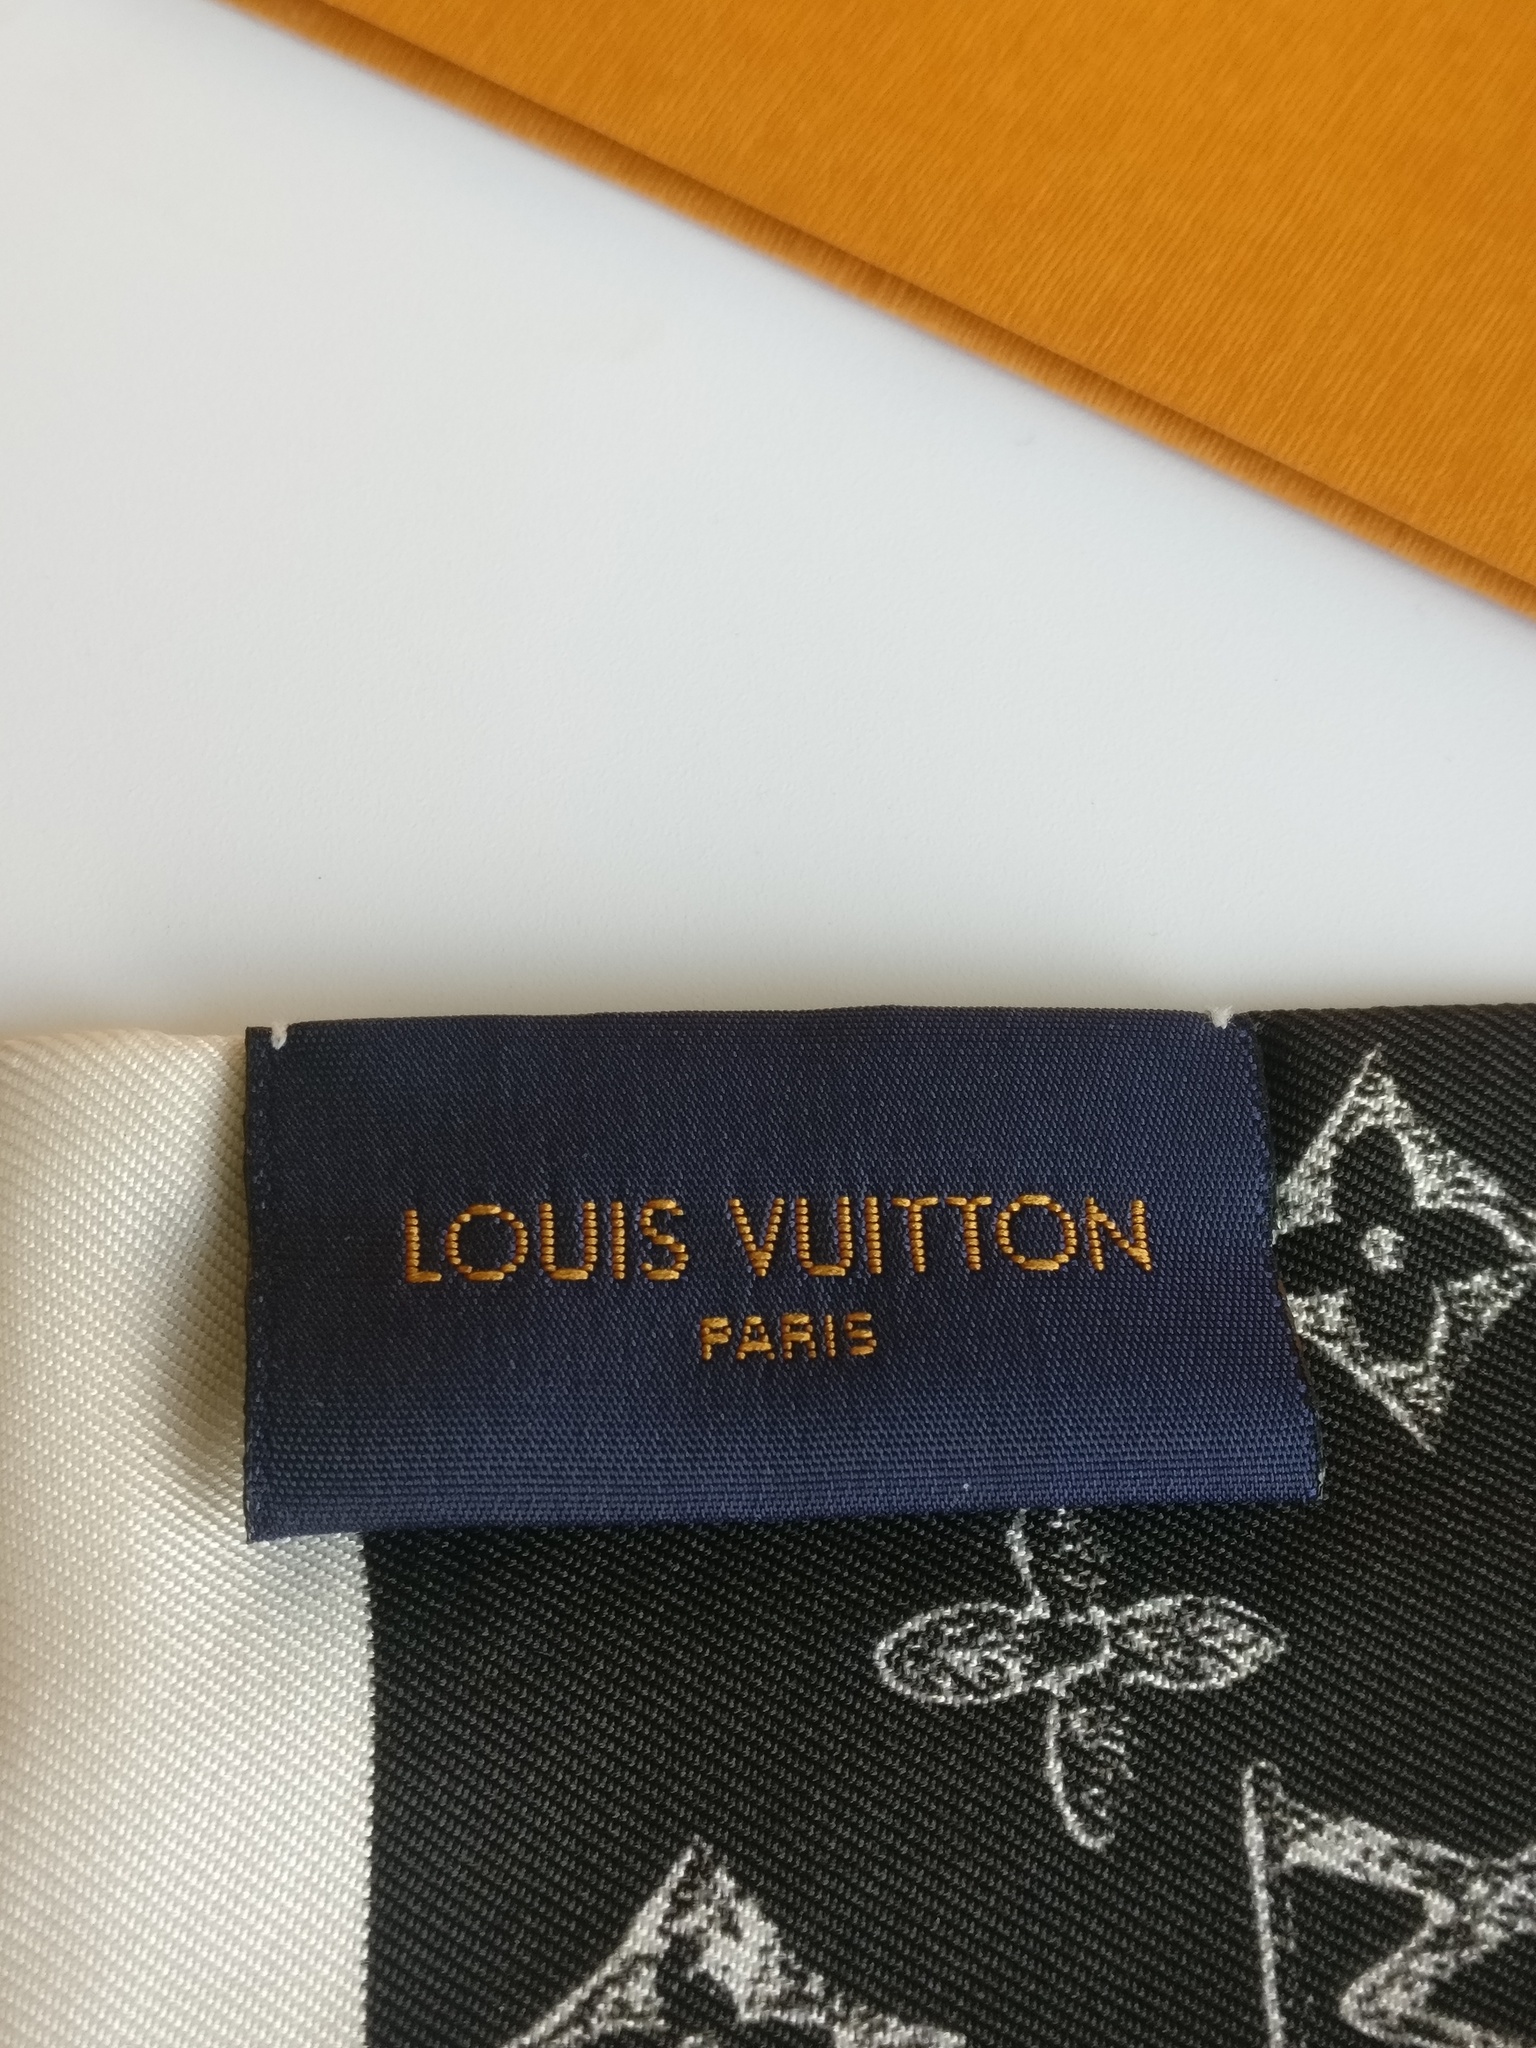 Louis Vuitton bandeau Catogram limited edition